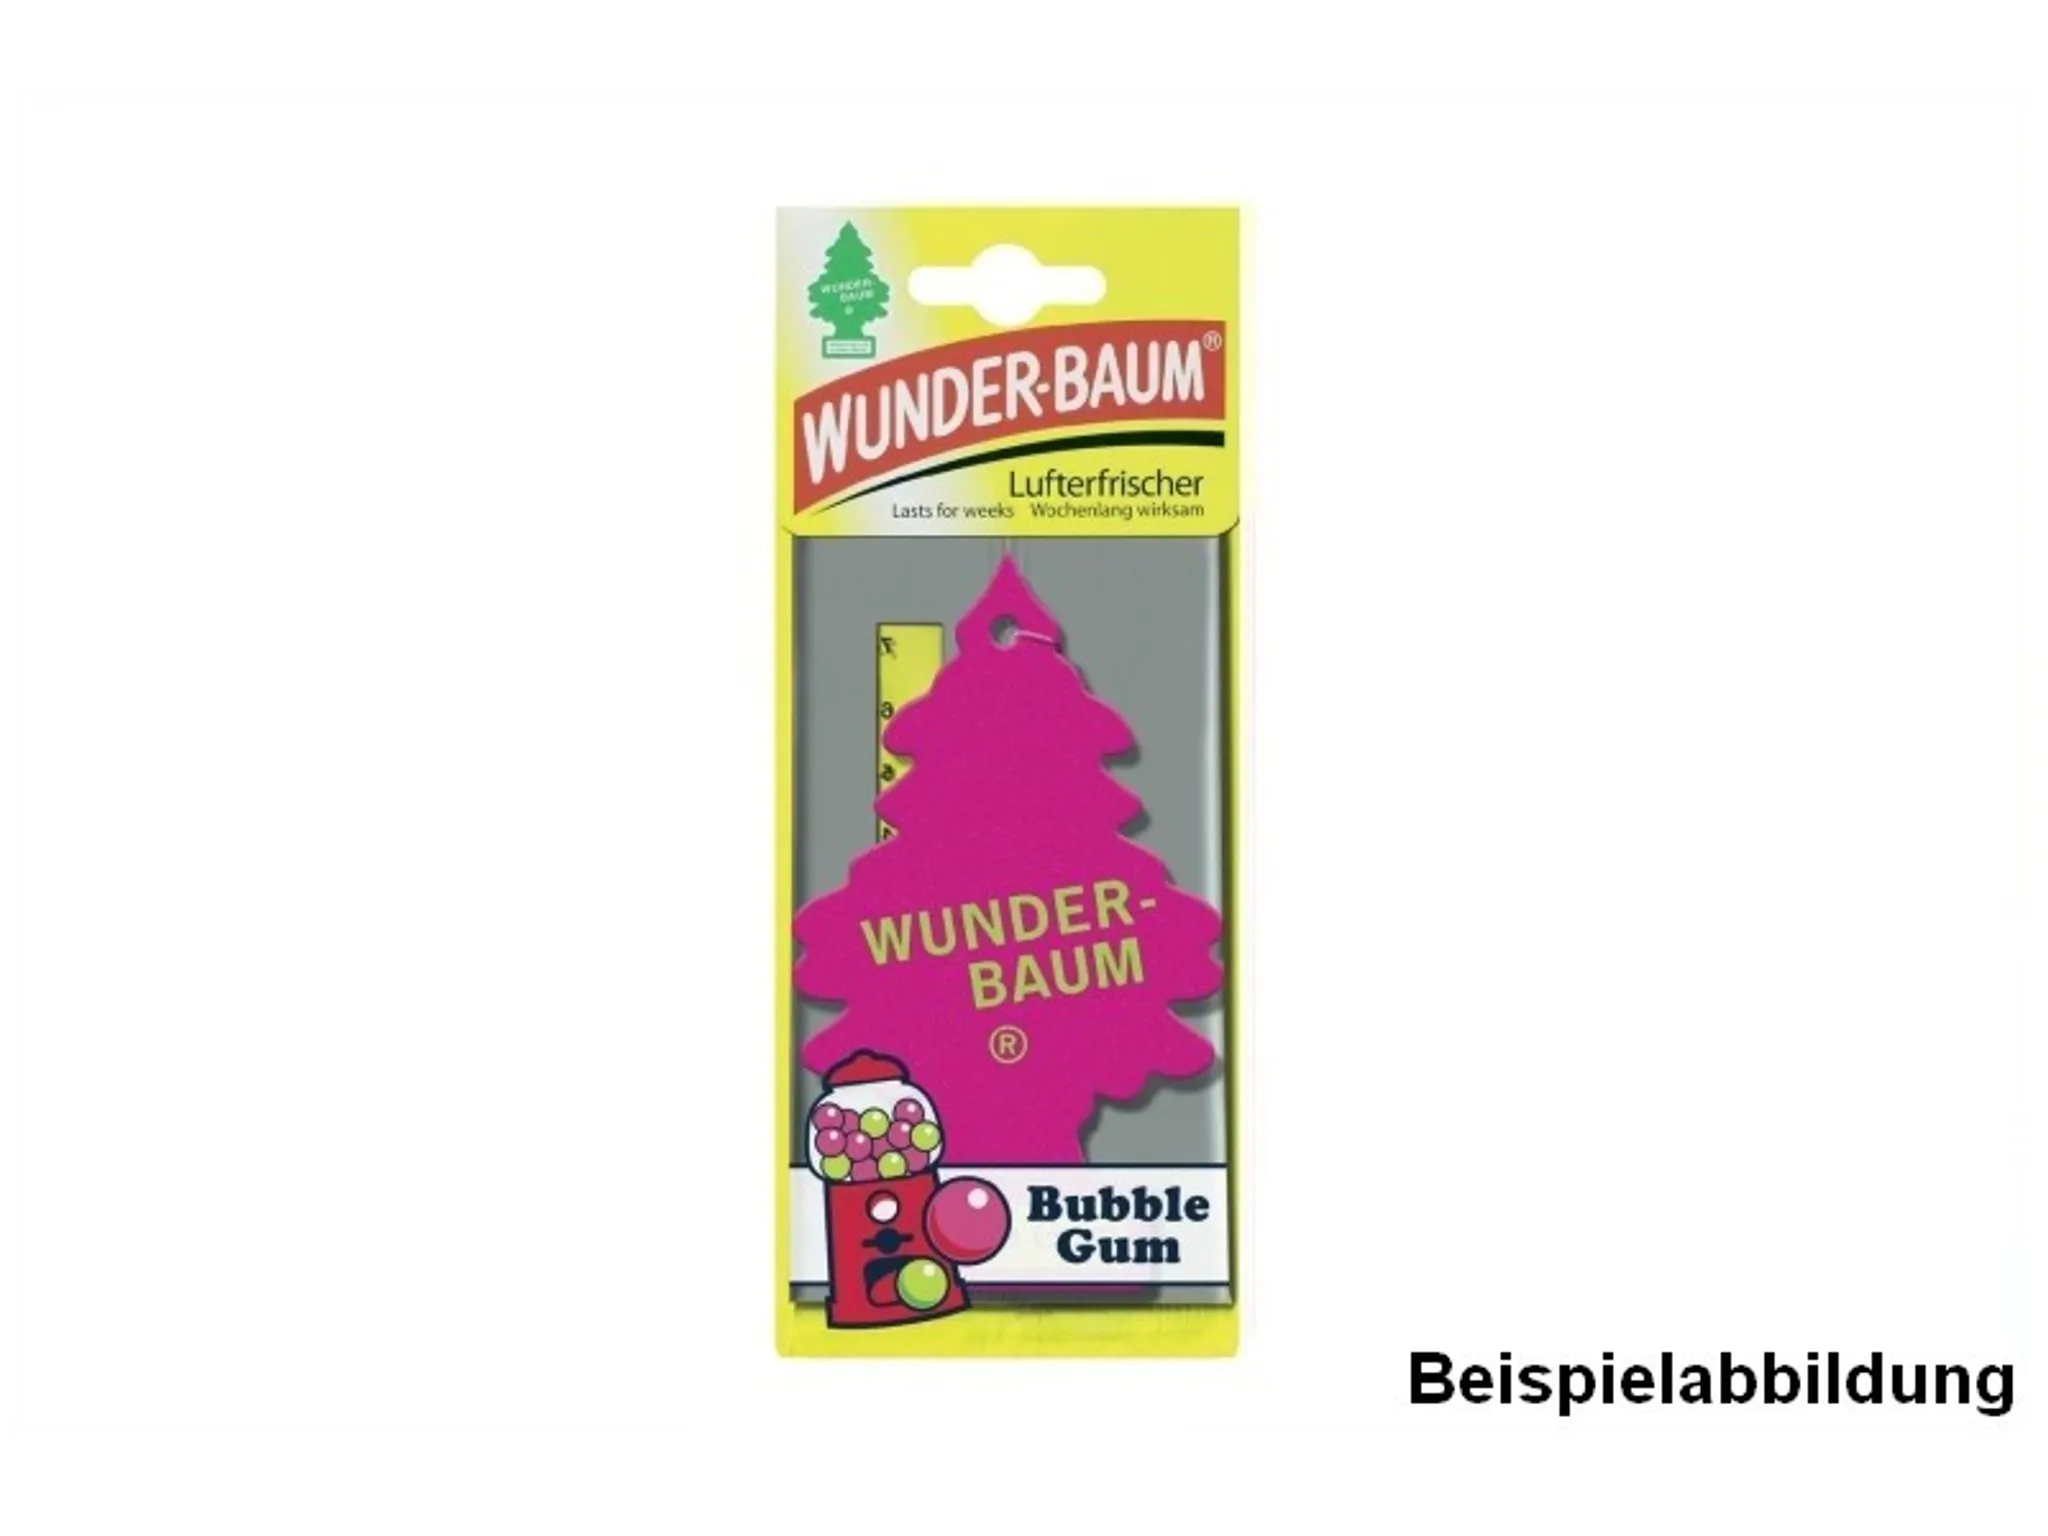 Wunderbaum® 10 Stück Bubble Gum Lufterfrischer Duftbaum Duft Auto Kaugummi